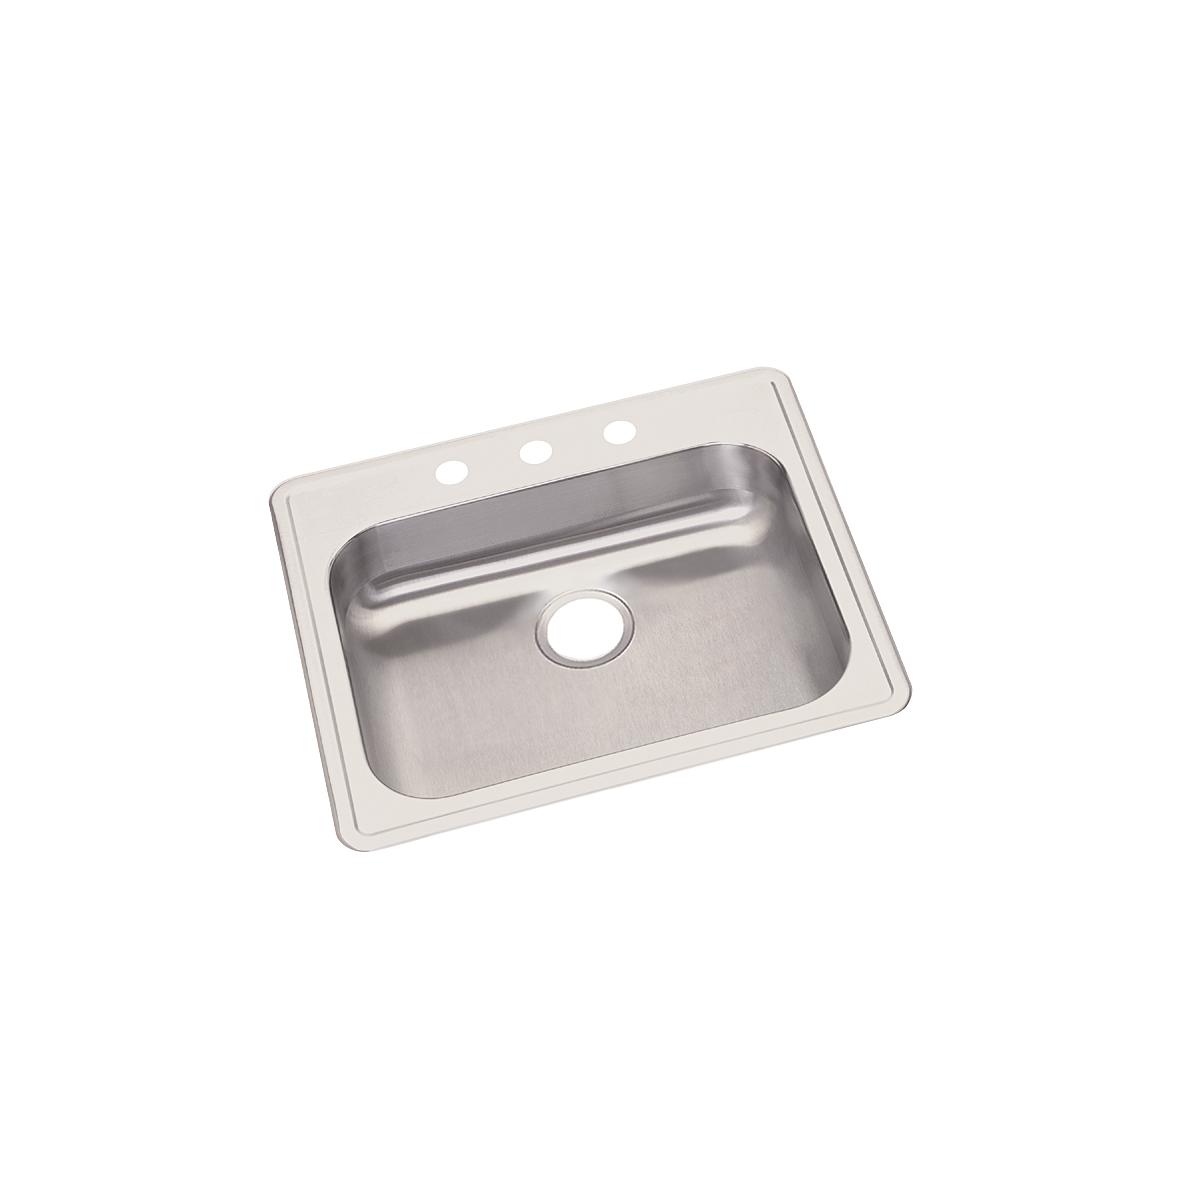 Elkay Stainless Steel Single Bowl Drop-in Sink 1276094